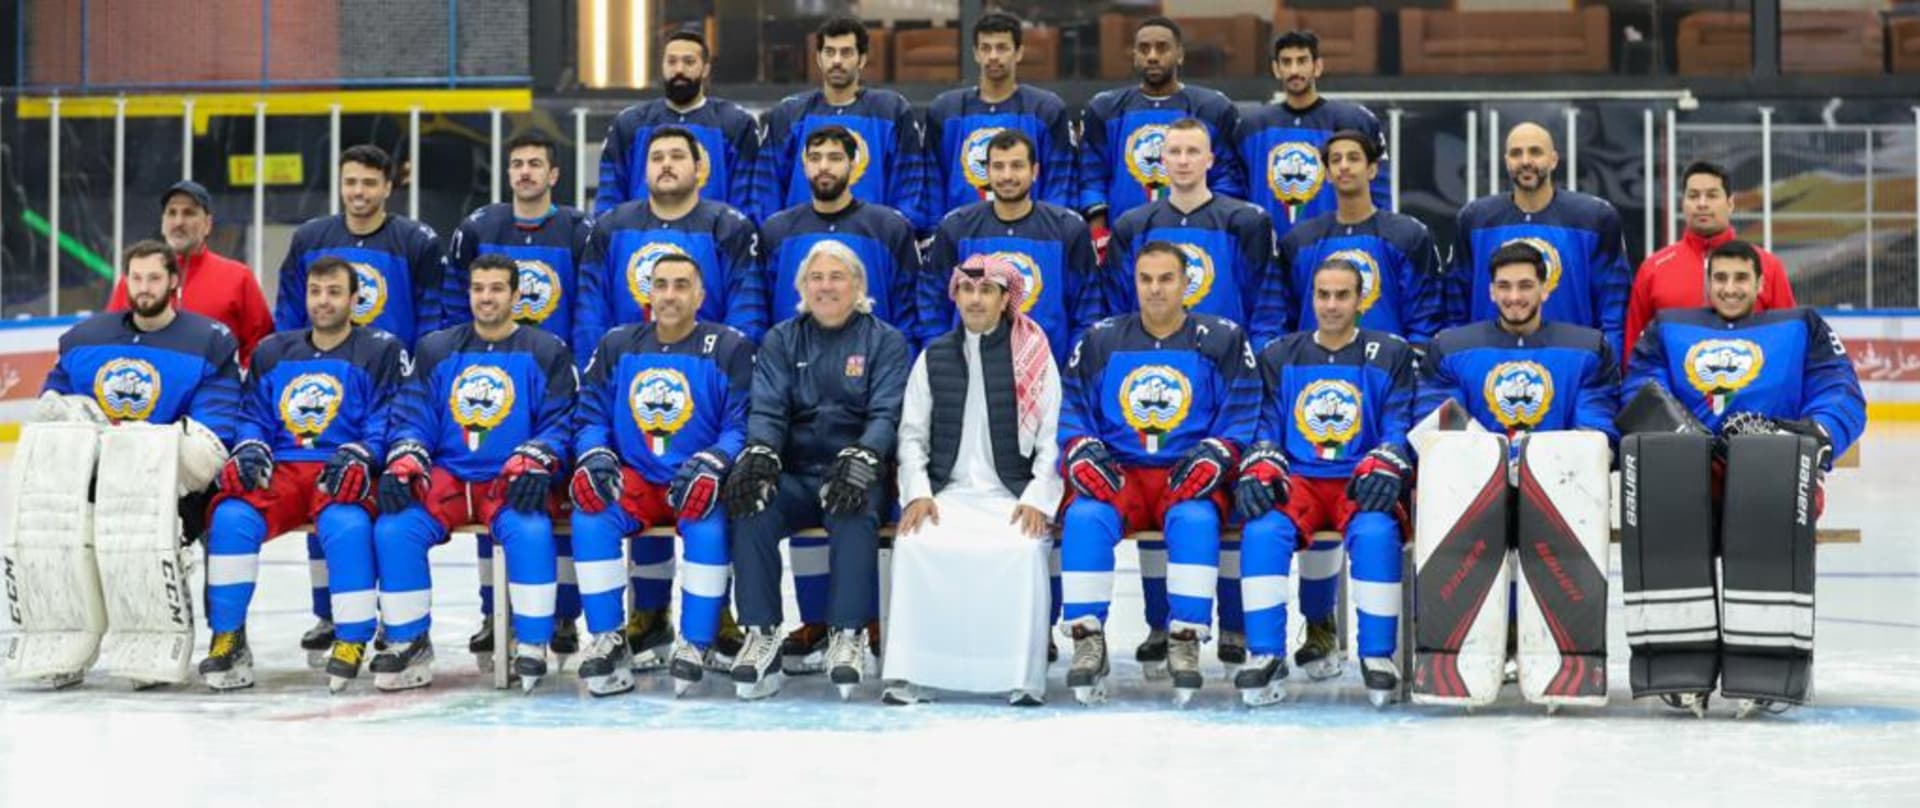 Kuvajtský hokejový tým i se svým českým koučem. Najít ho nedá zas takovou práci.